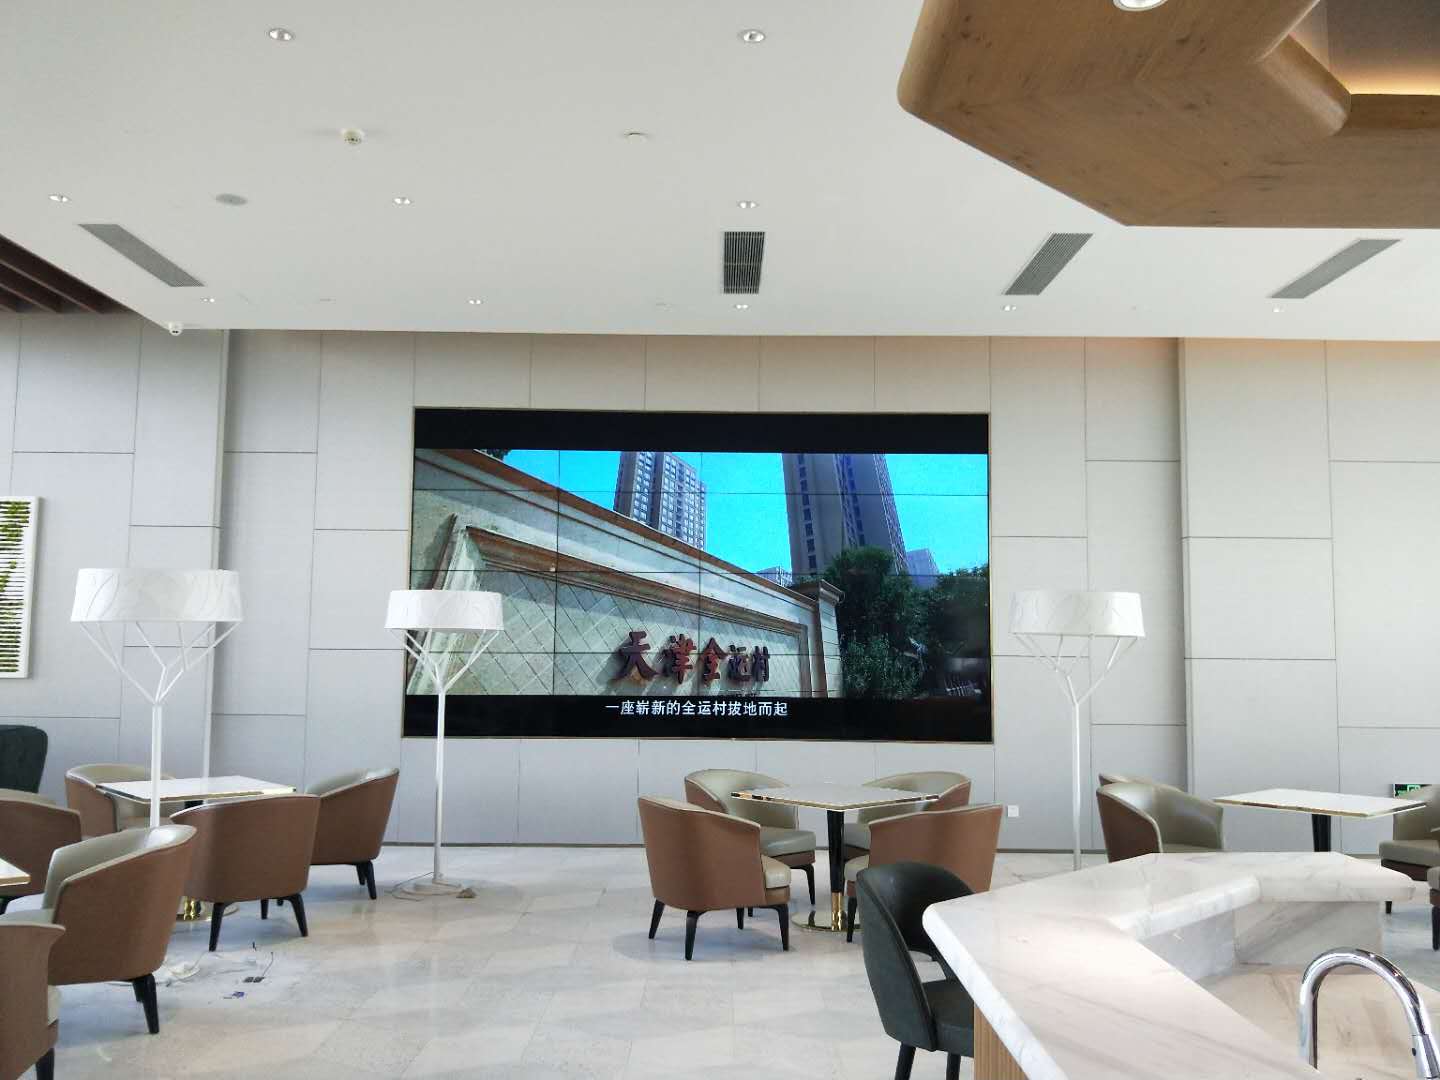 企业大厅展览展示锐丽视频墙.jpg